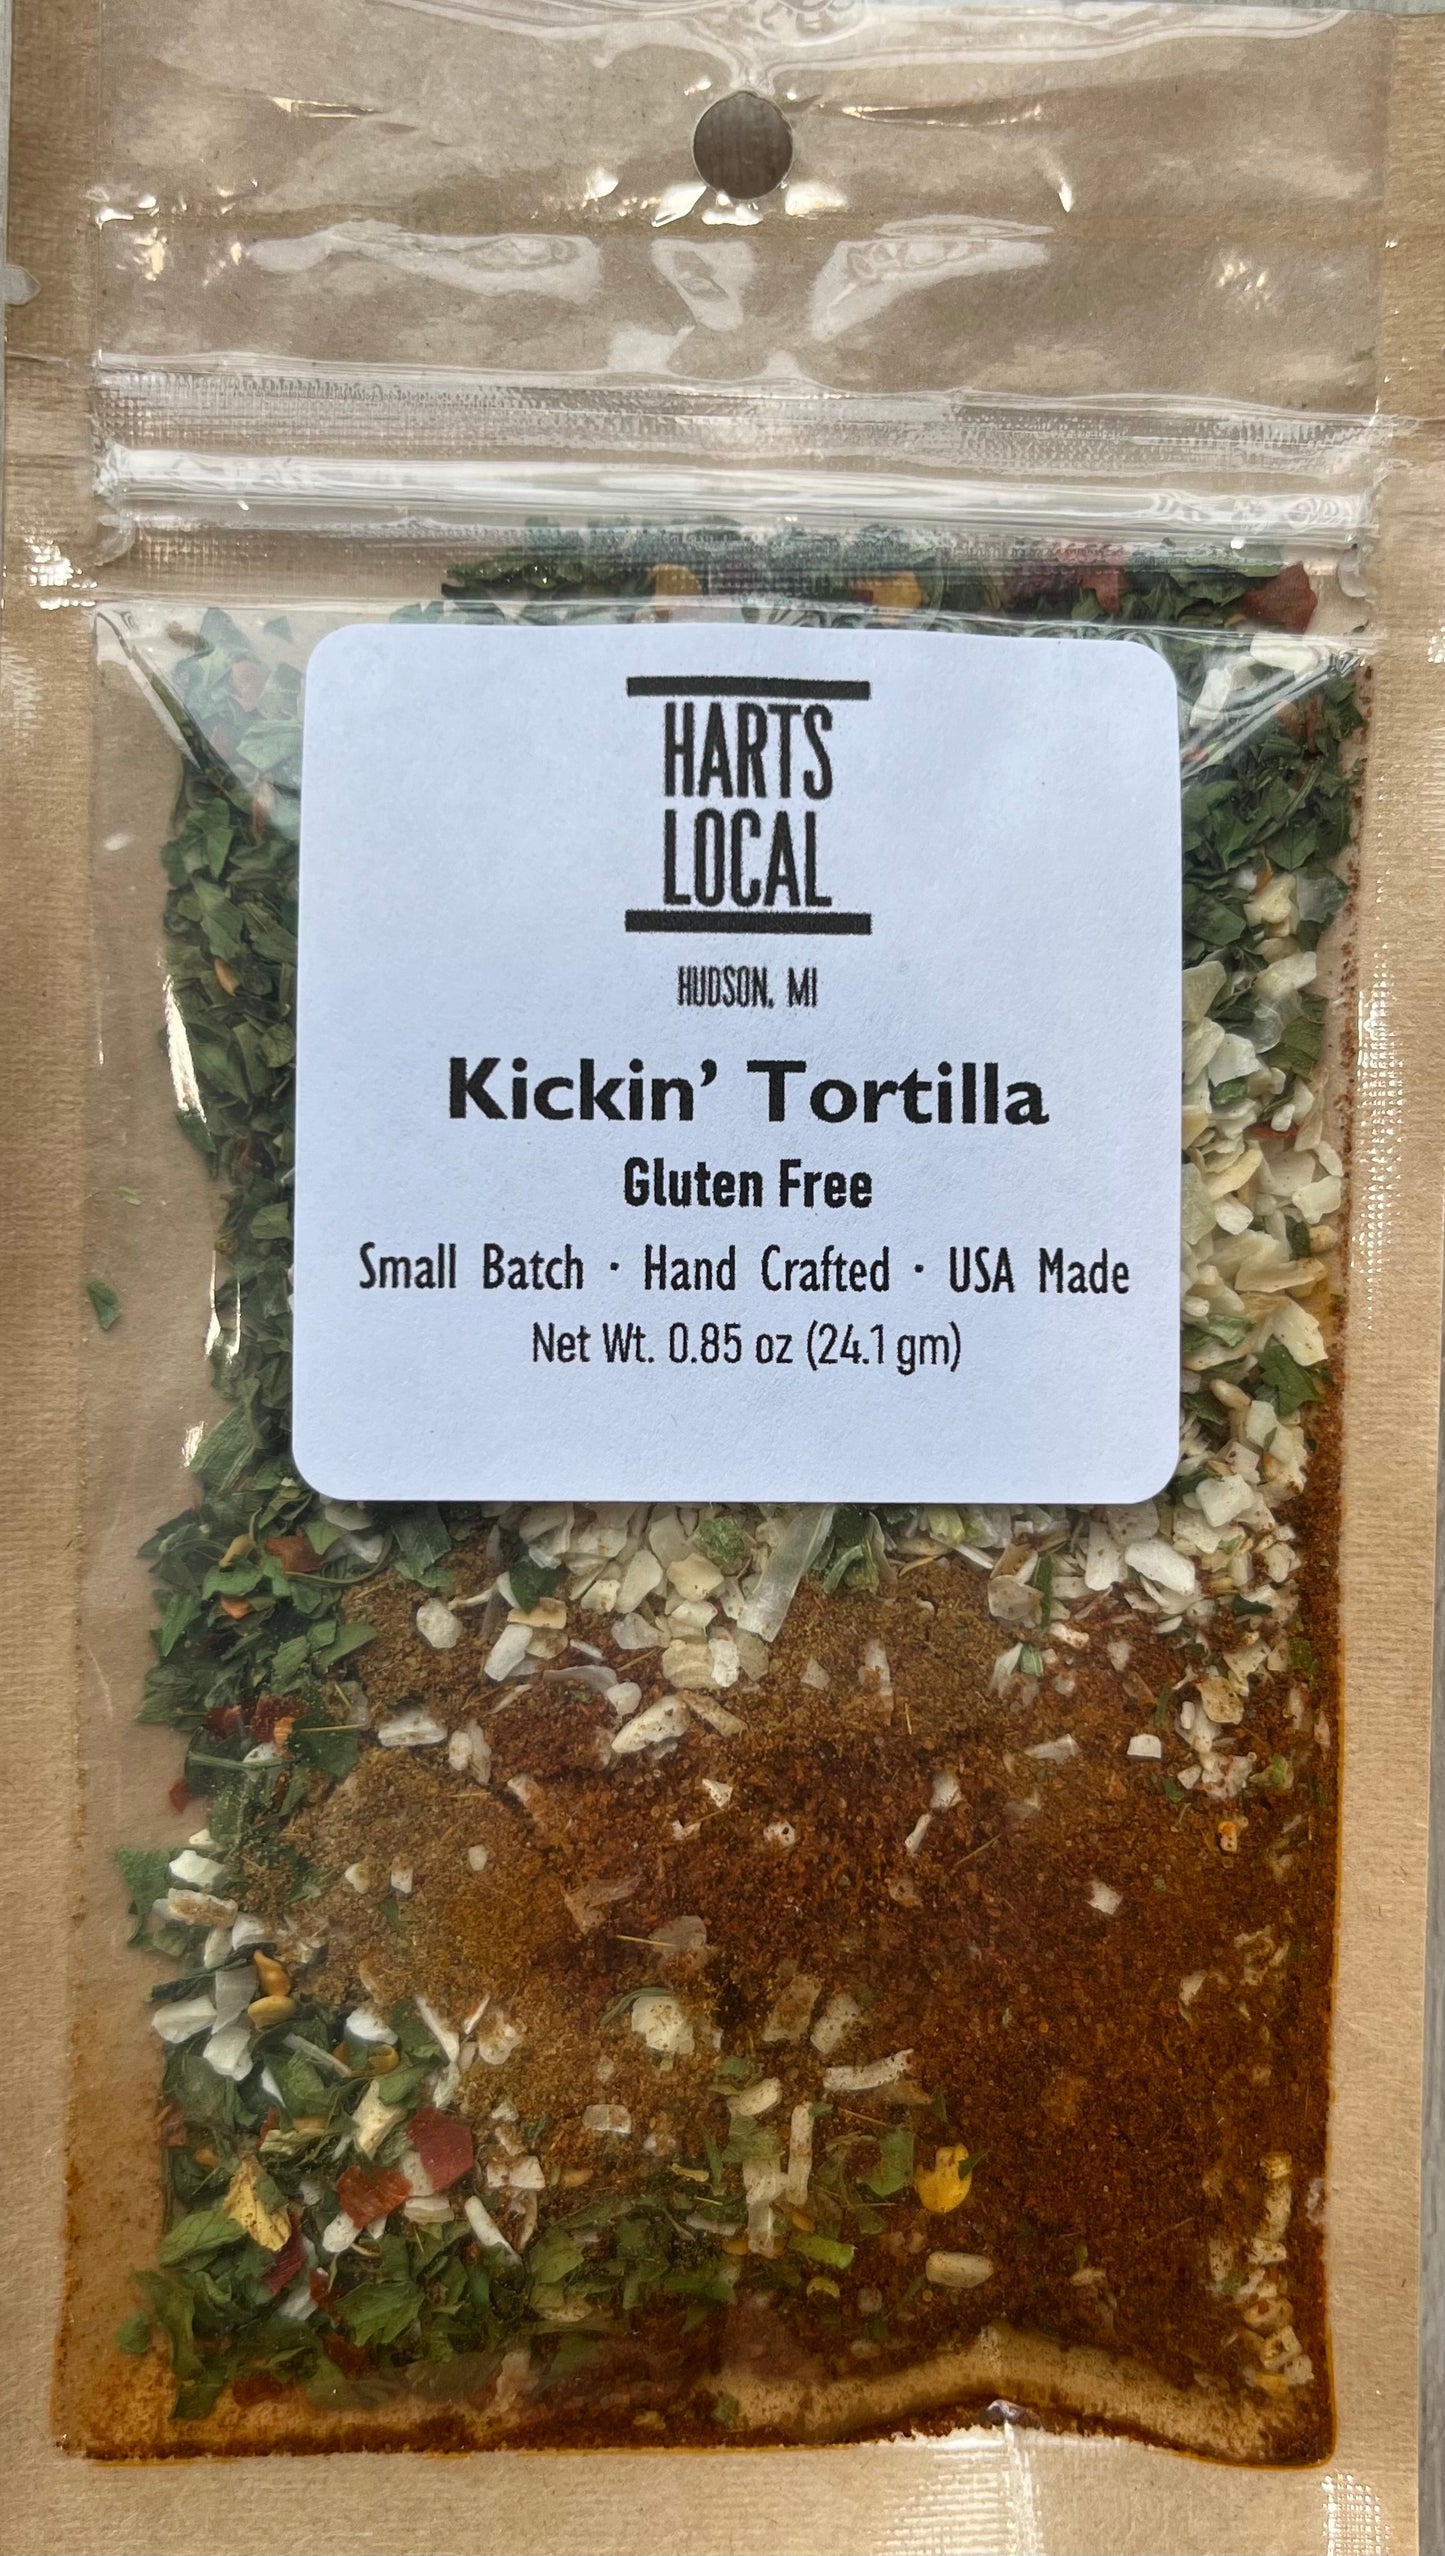 Kickin’ Tortilla